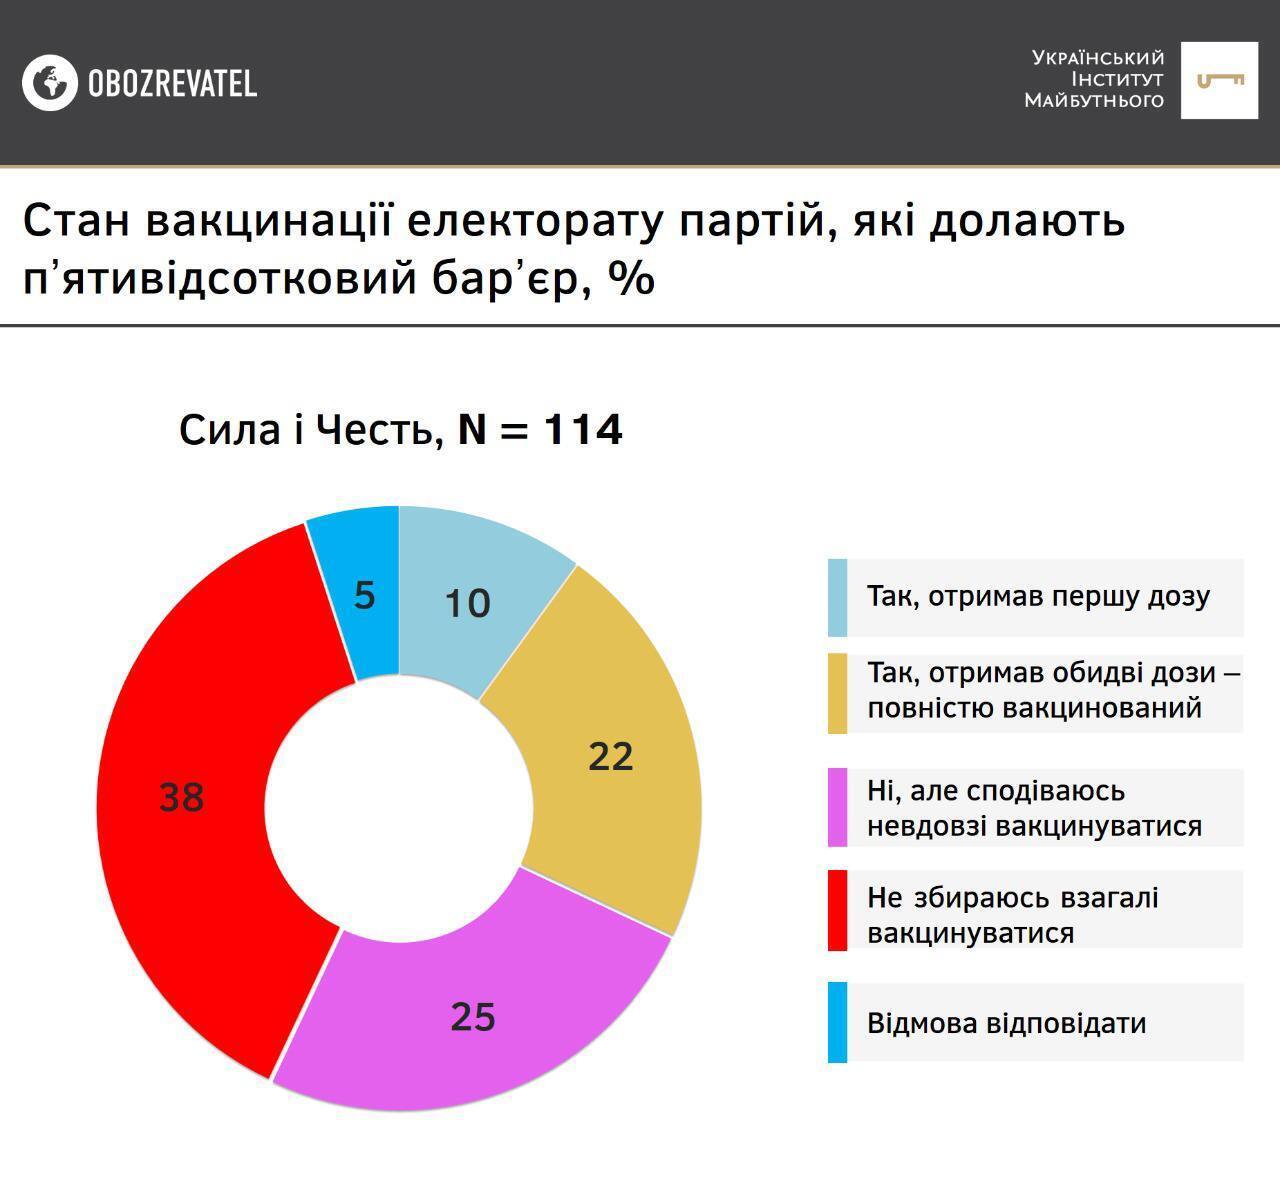 Результати опитування серед прихильників партії "Сила і честь"